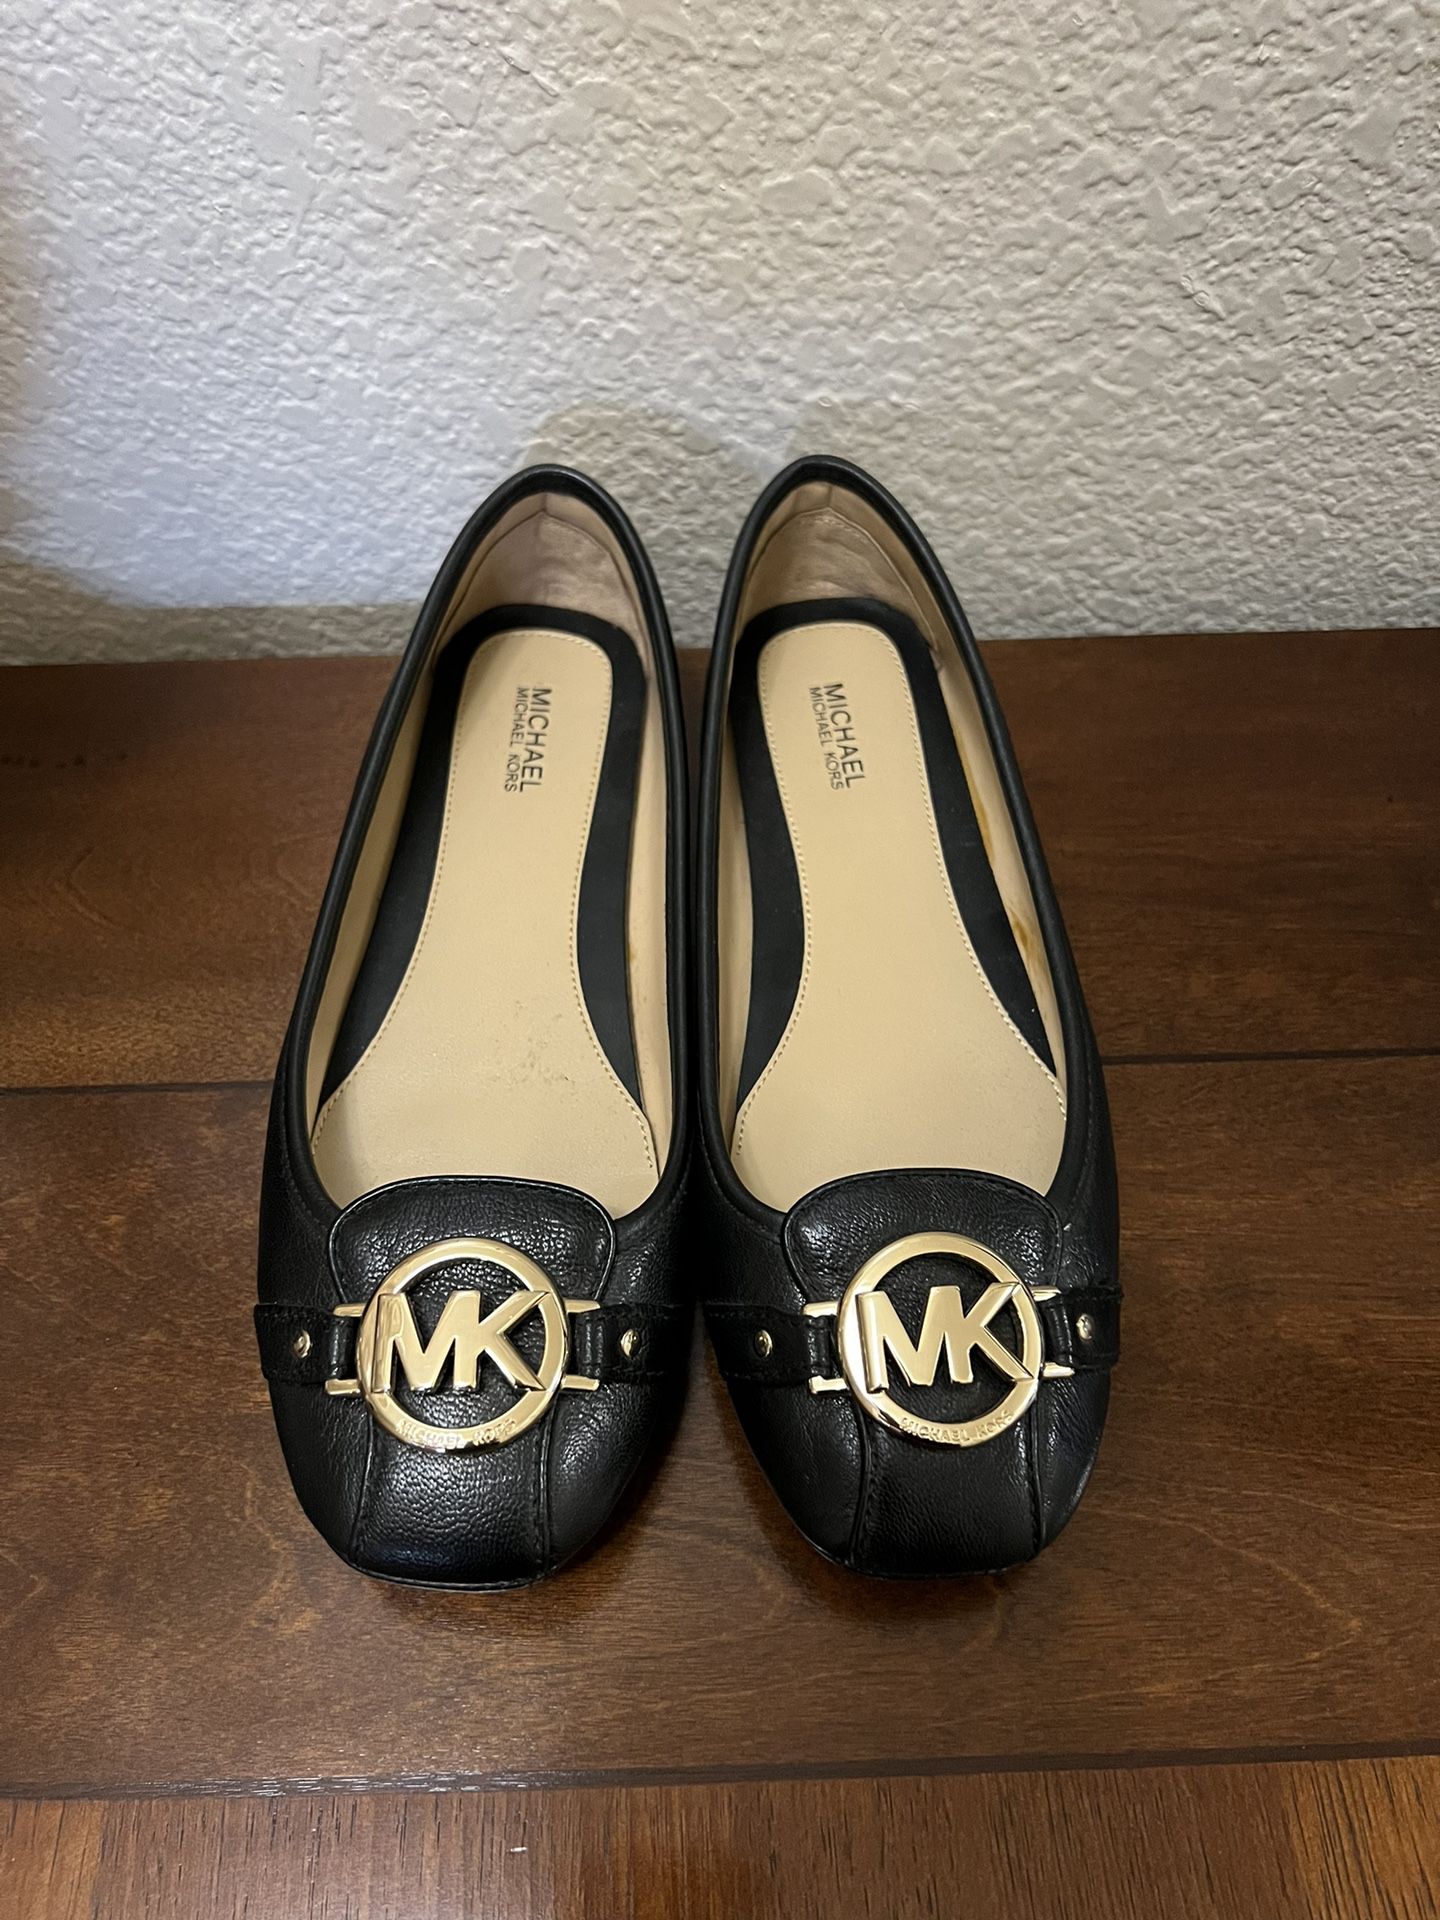 Michael Kors Women’s Flats Work Shoes